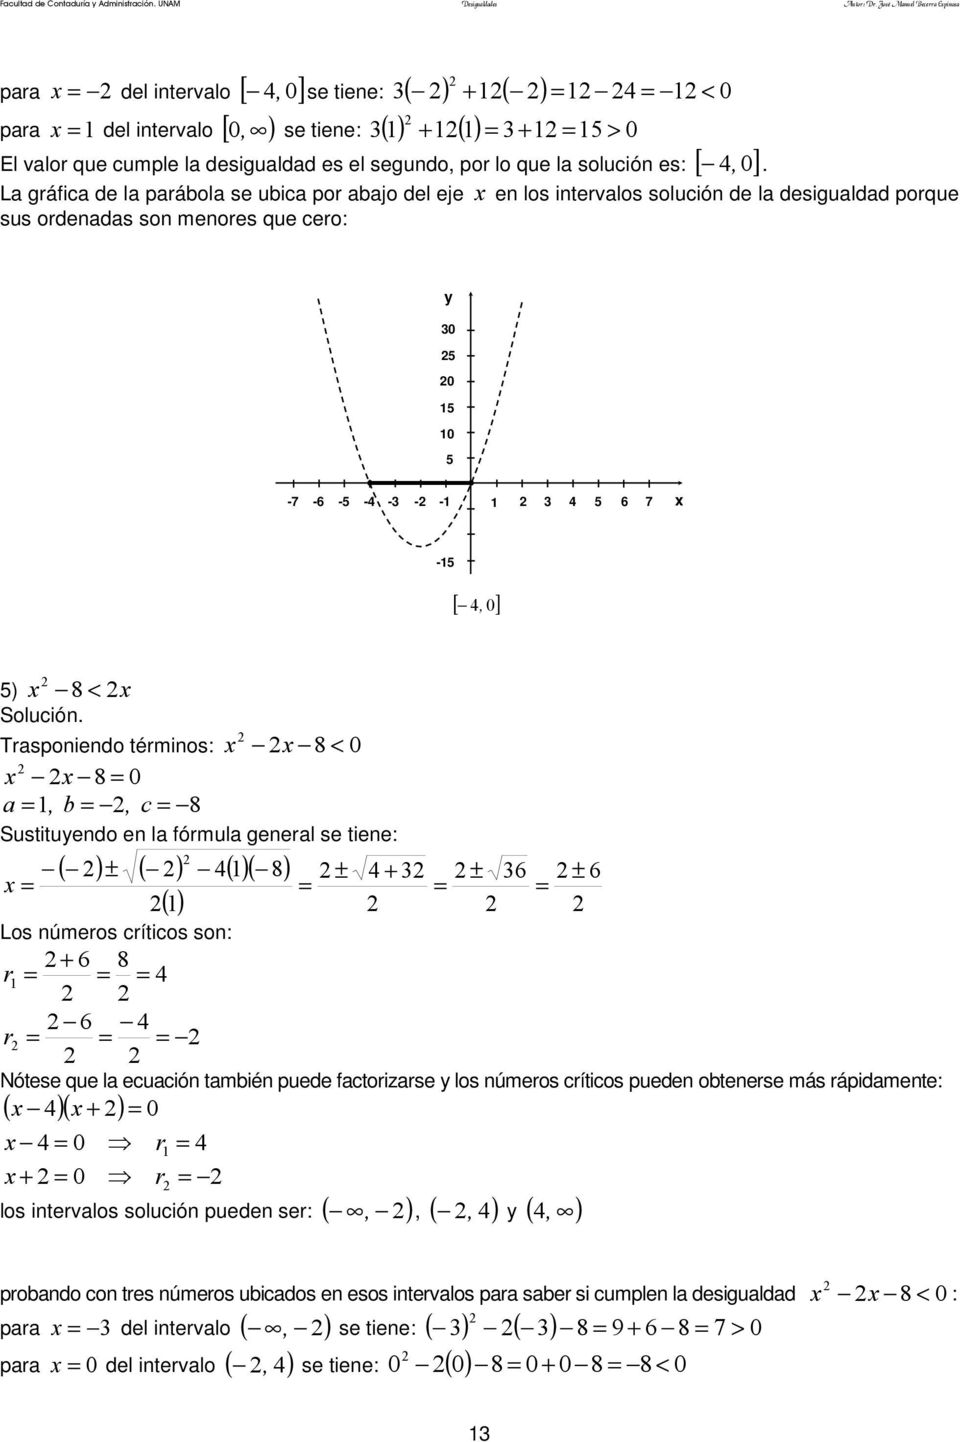 La gráfica de la parábola se ubica por abajo del eje en los intervalos solución de la desigualdad porque sus ordenadas son menores que cero: 0 0 1-7 - -4 - - 1 4 6 7 [ 4, 0] ) 8 < Trasponiendo